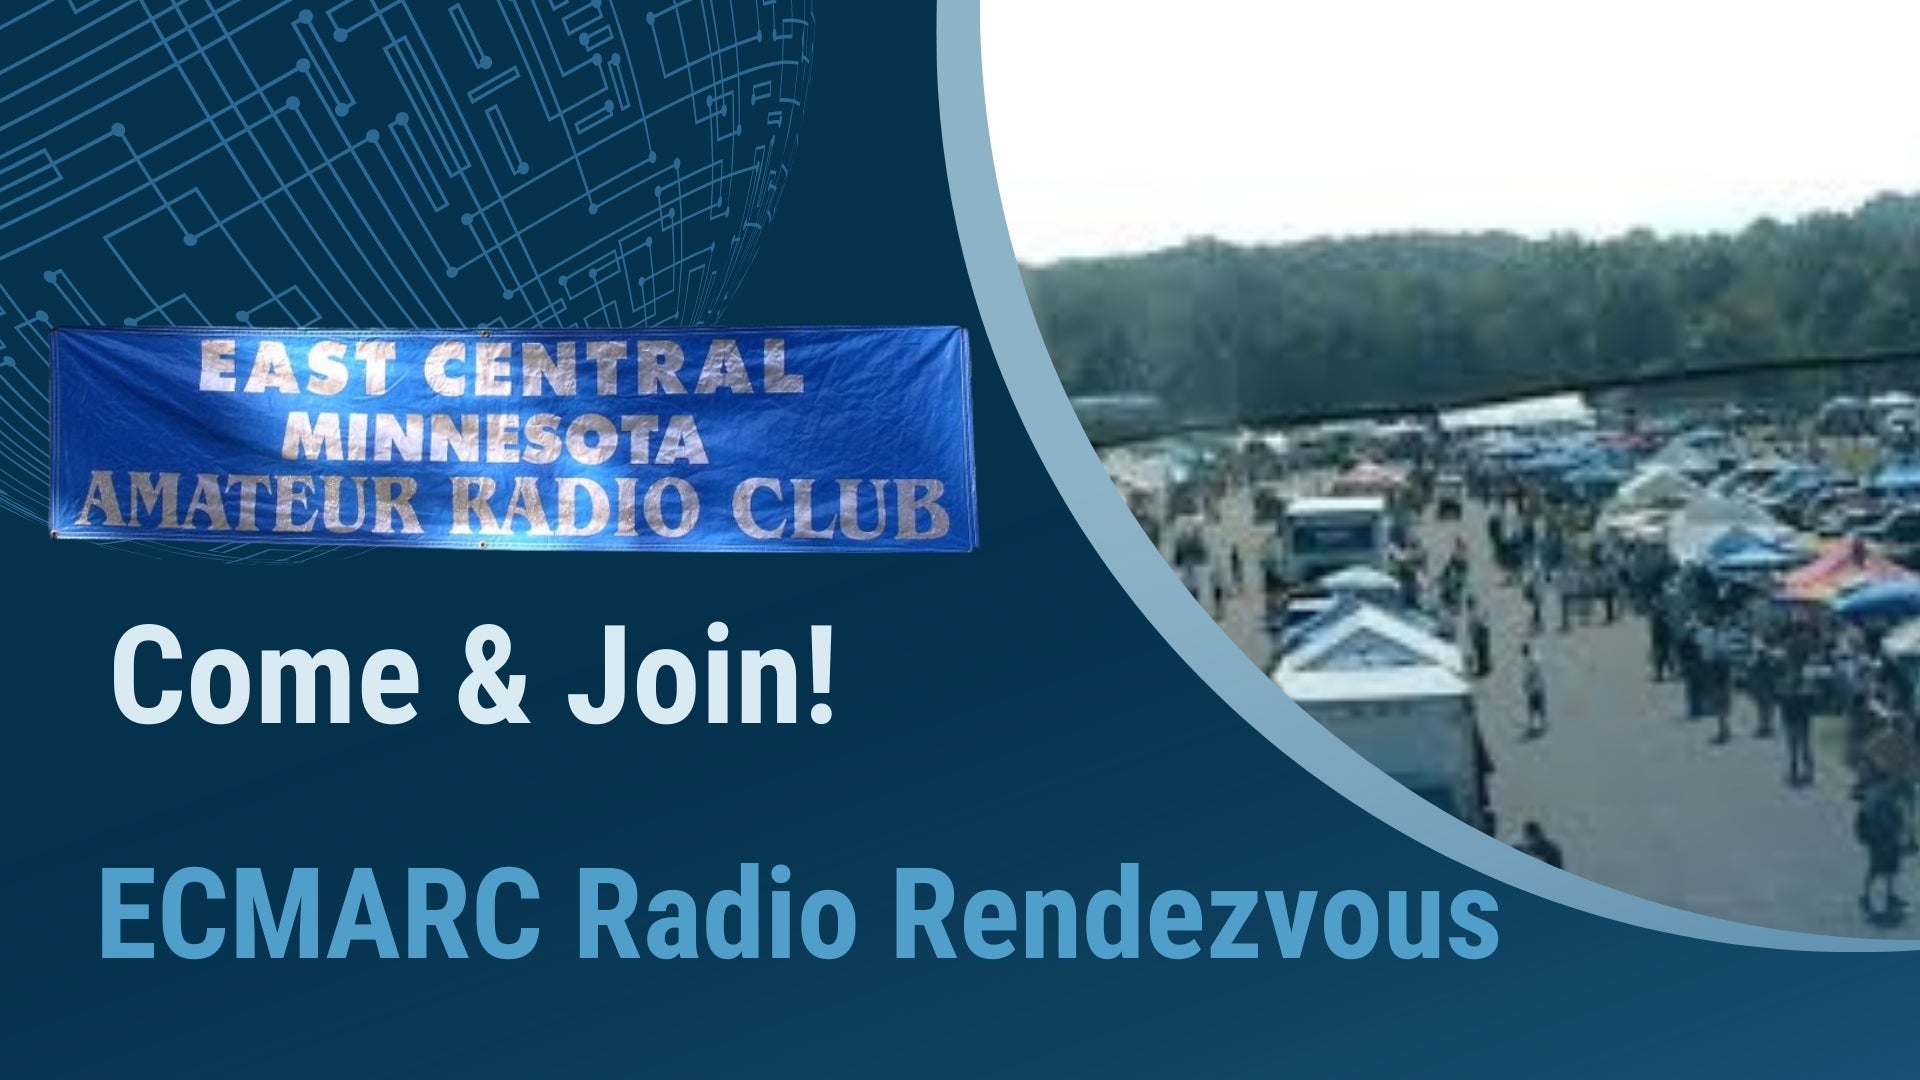 ECMARC Radio Rendezvous